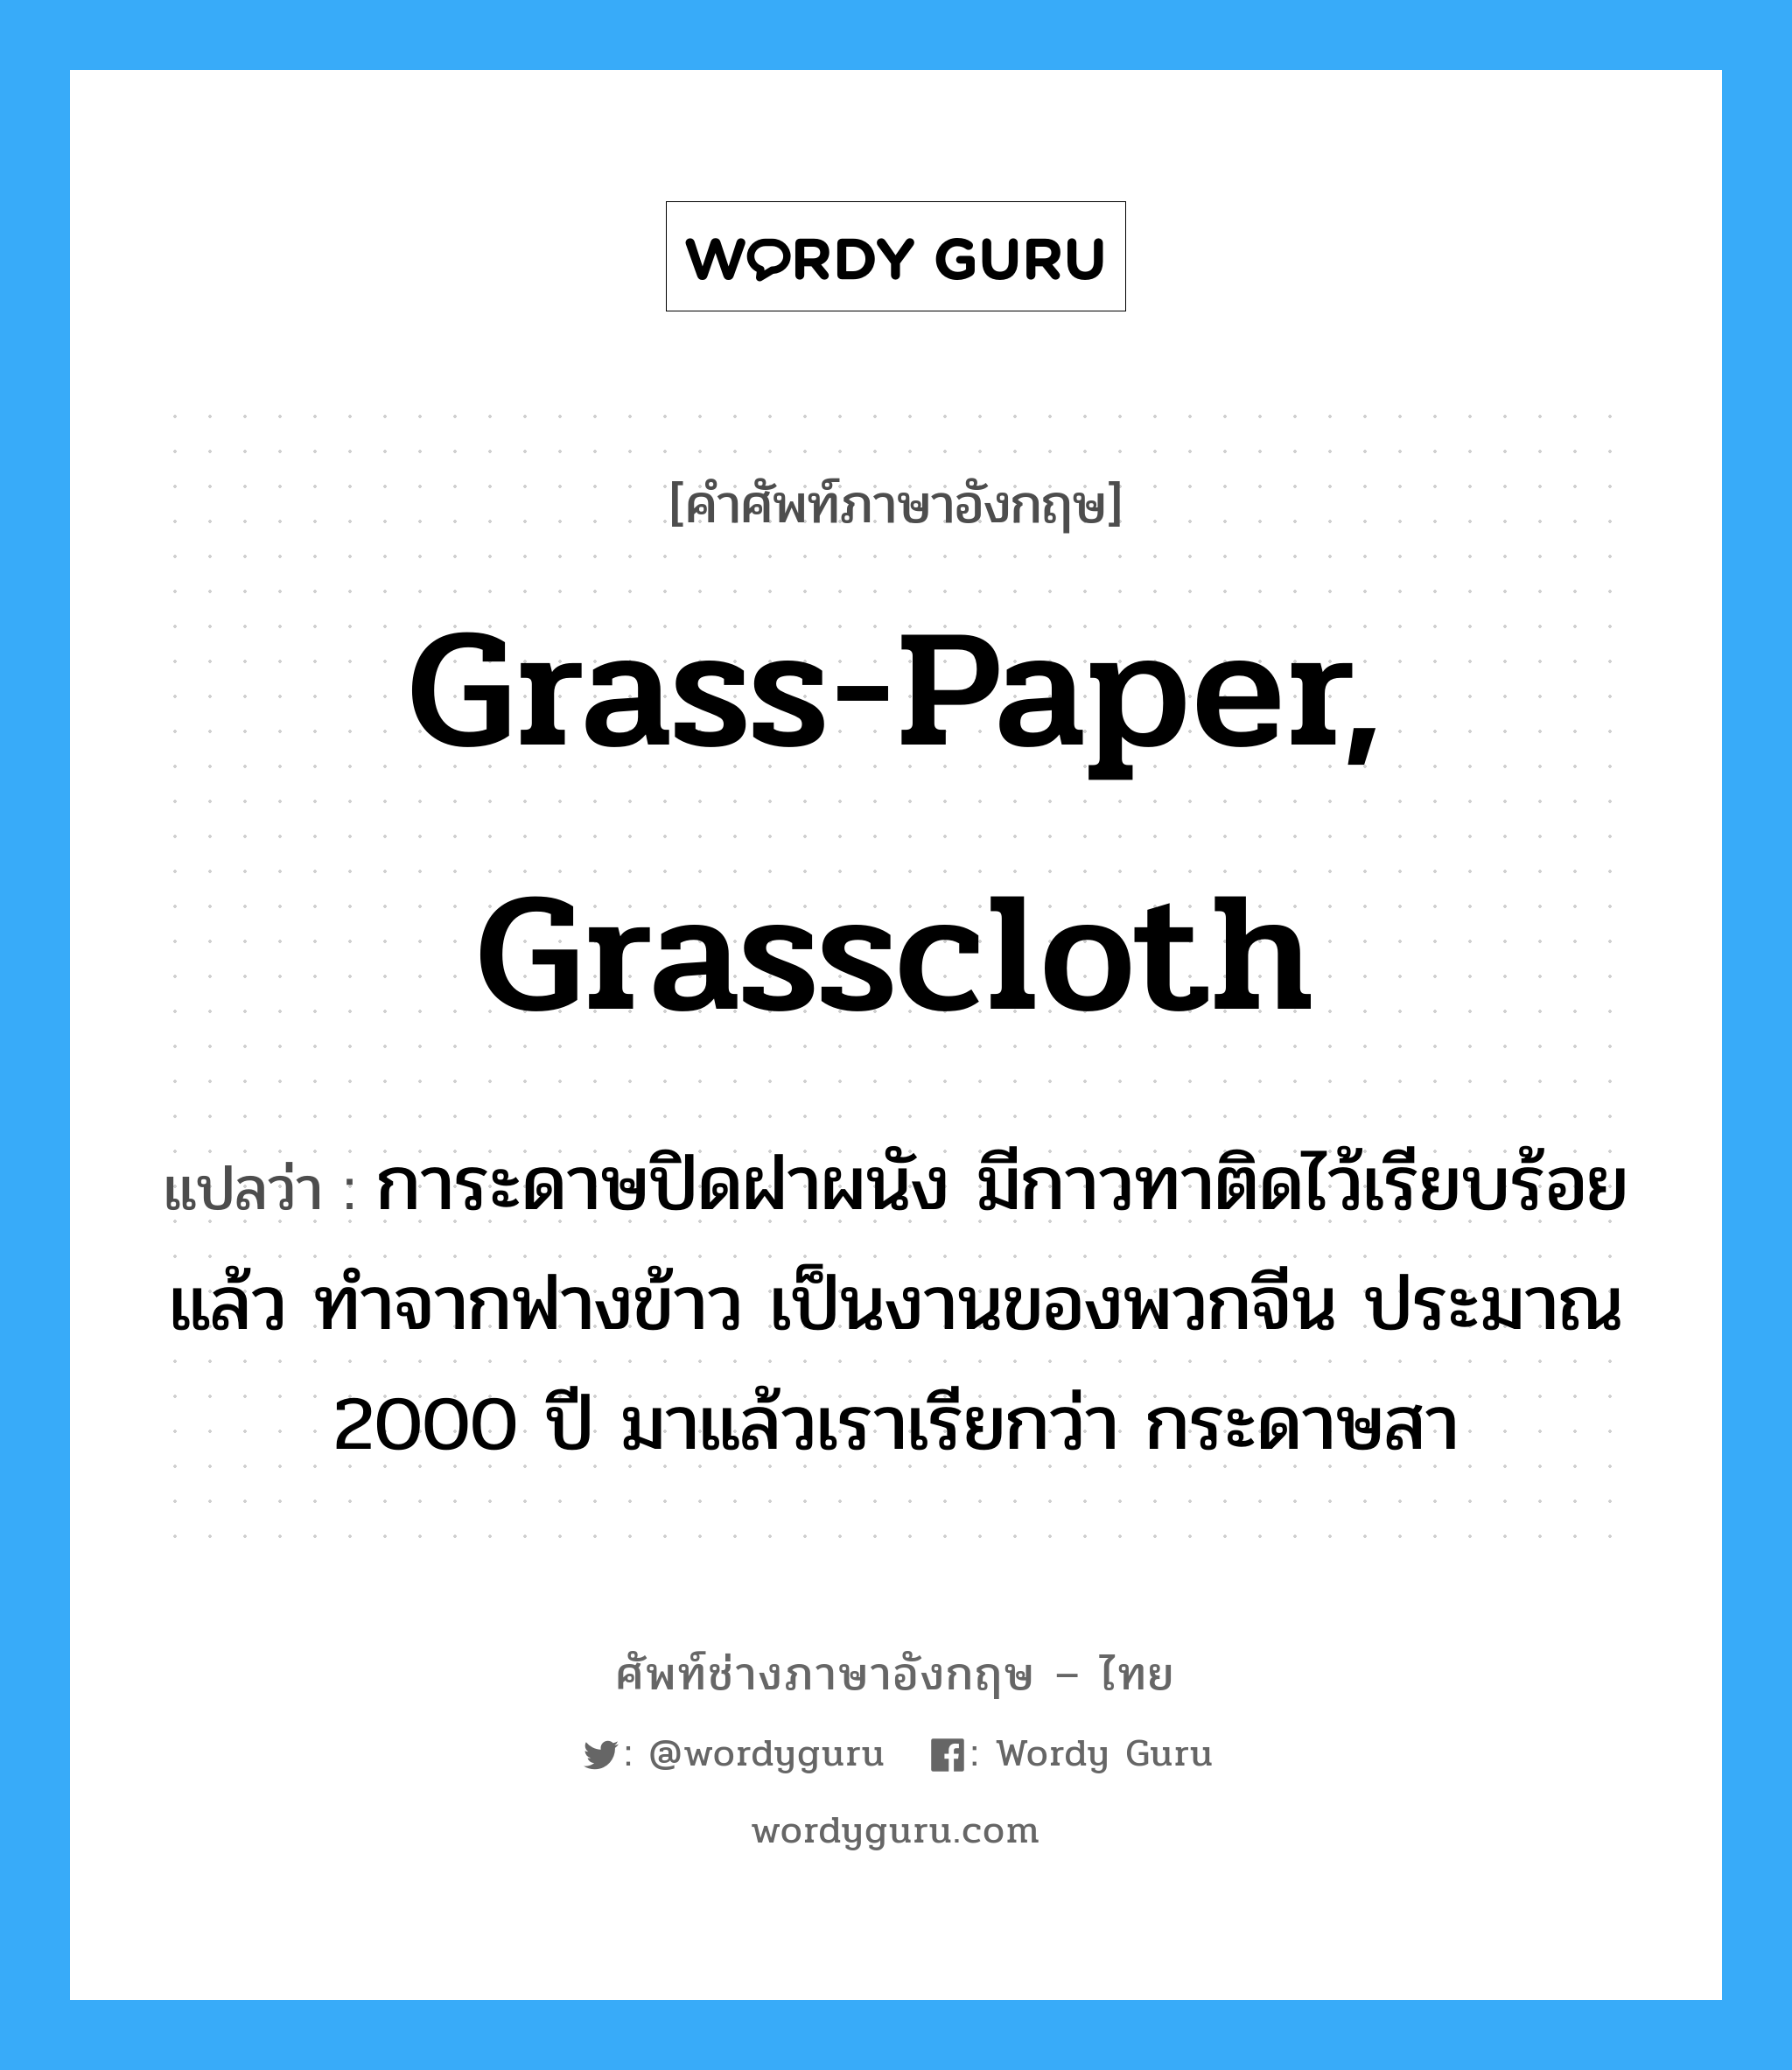 grass-paper, grasscloth แปลว่า?, คำศัพท์ช่างภาษาอังกฤษ - ไทย grass-paper, grasscloth คำศัพท์ภาษาอังกฤษ grass-paper, grasscloth แปลว่า การะดาษปิดฝาผนัง มีกาวทาติดไว้เรียบร้อยแล้ว ทำจากฟางข้าว เป็นงานของพวกจีน ประมาณ 2000 ปี มาแล้วเราเรียกว่า กระดาษสา